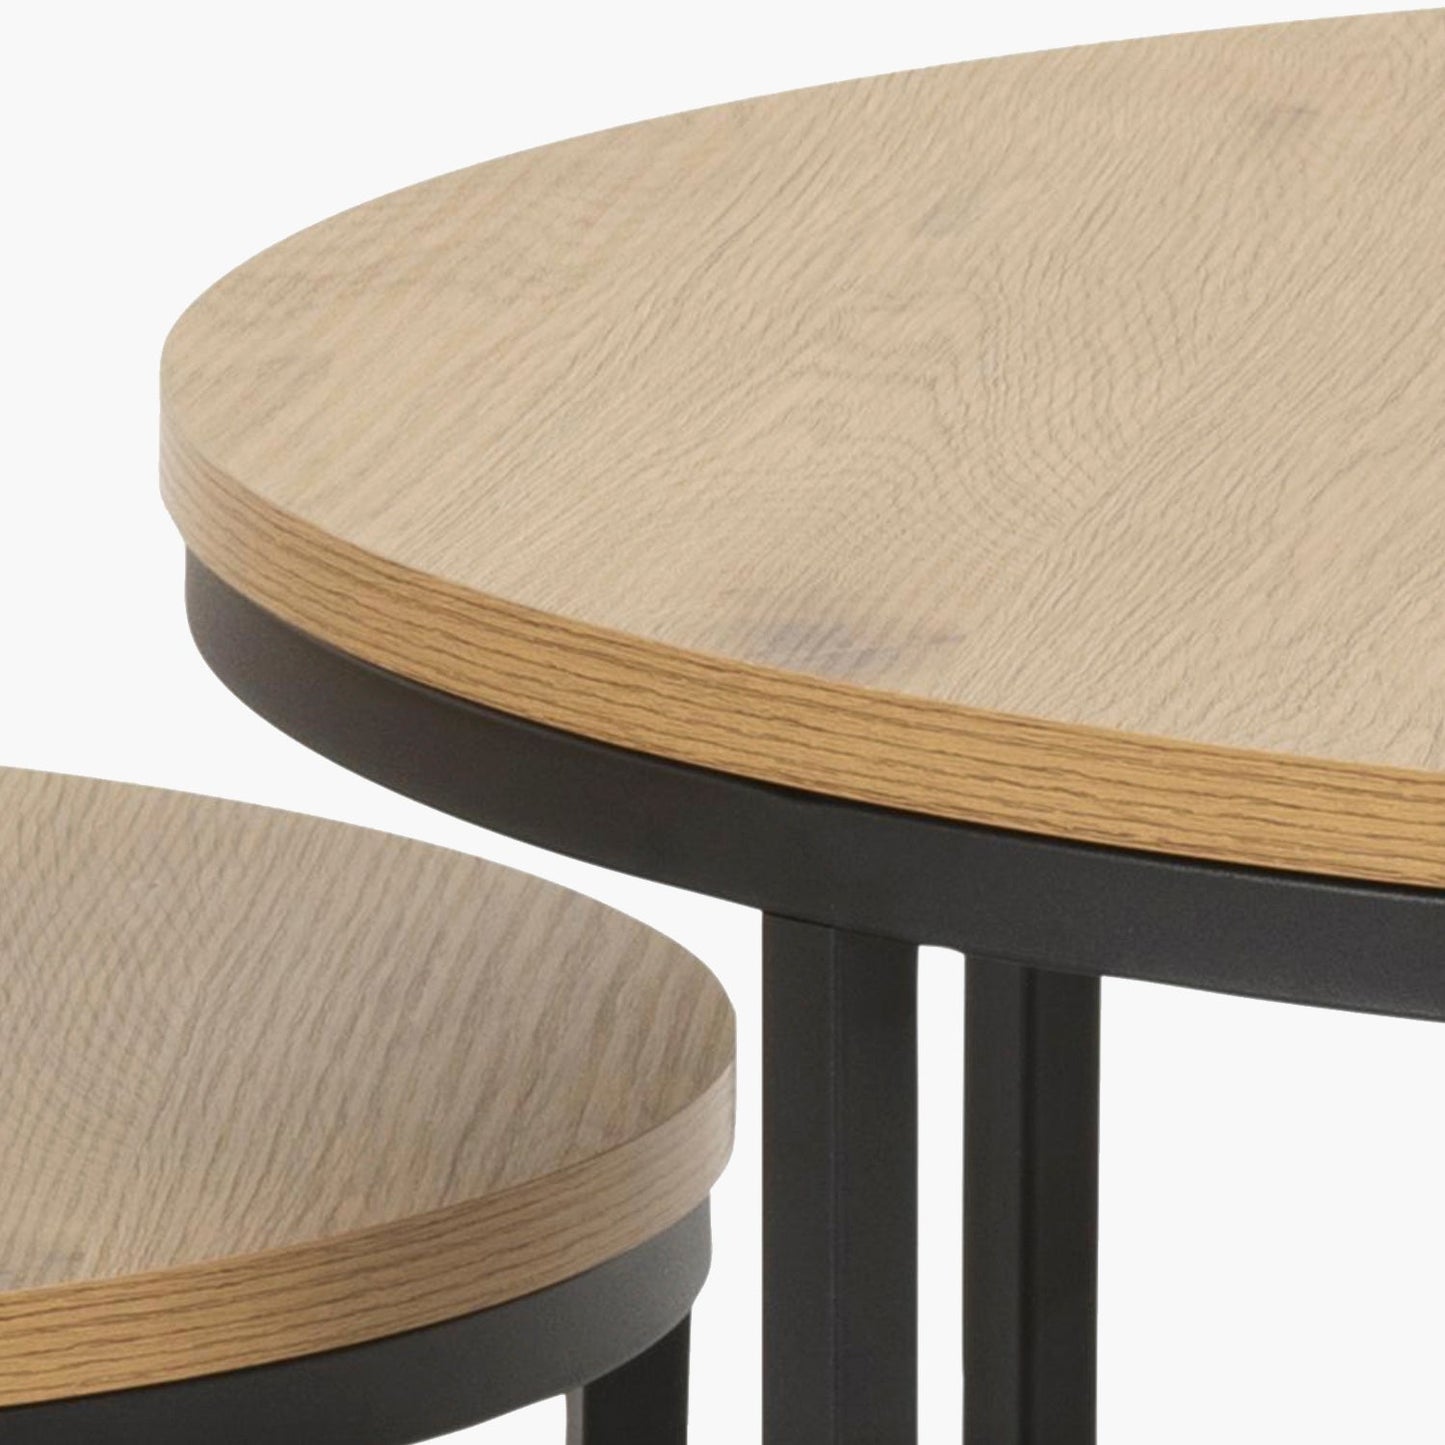 mesas-centro-anidadas-spiro-form-design